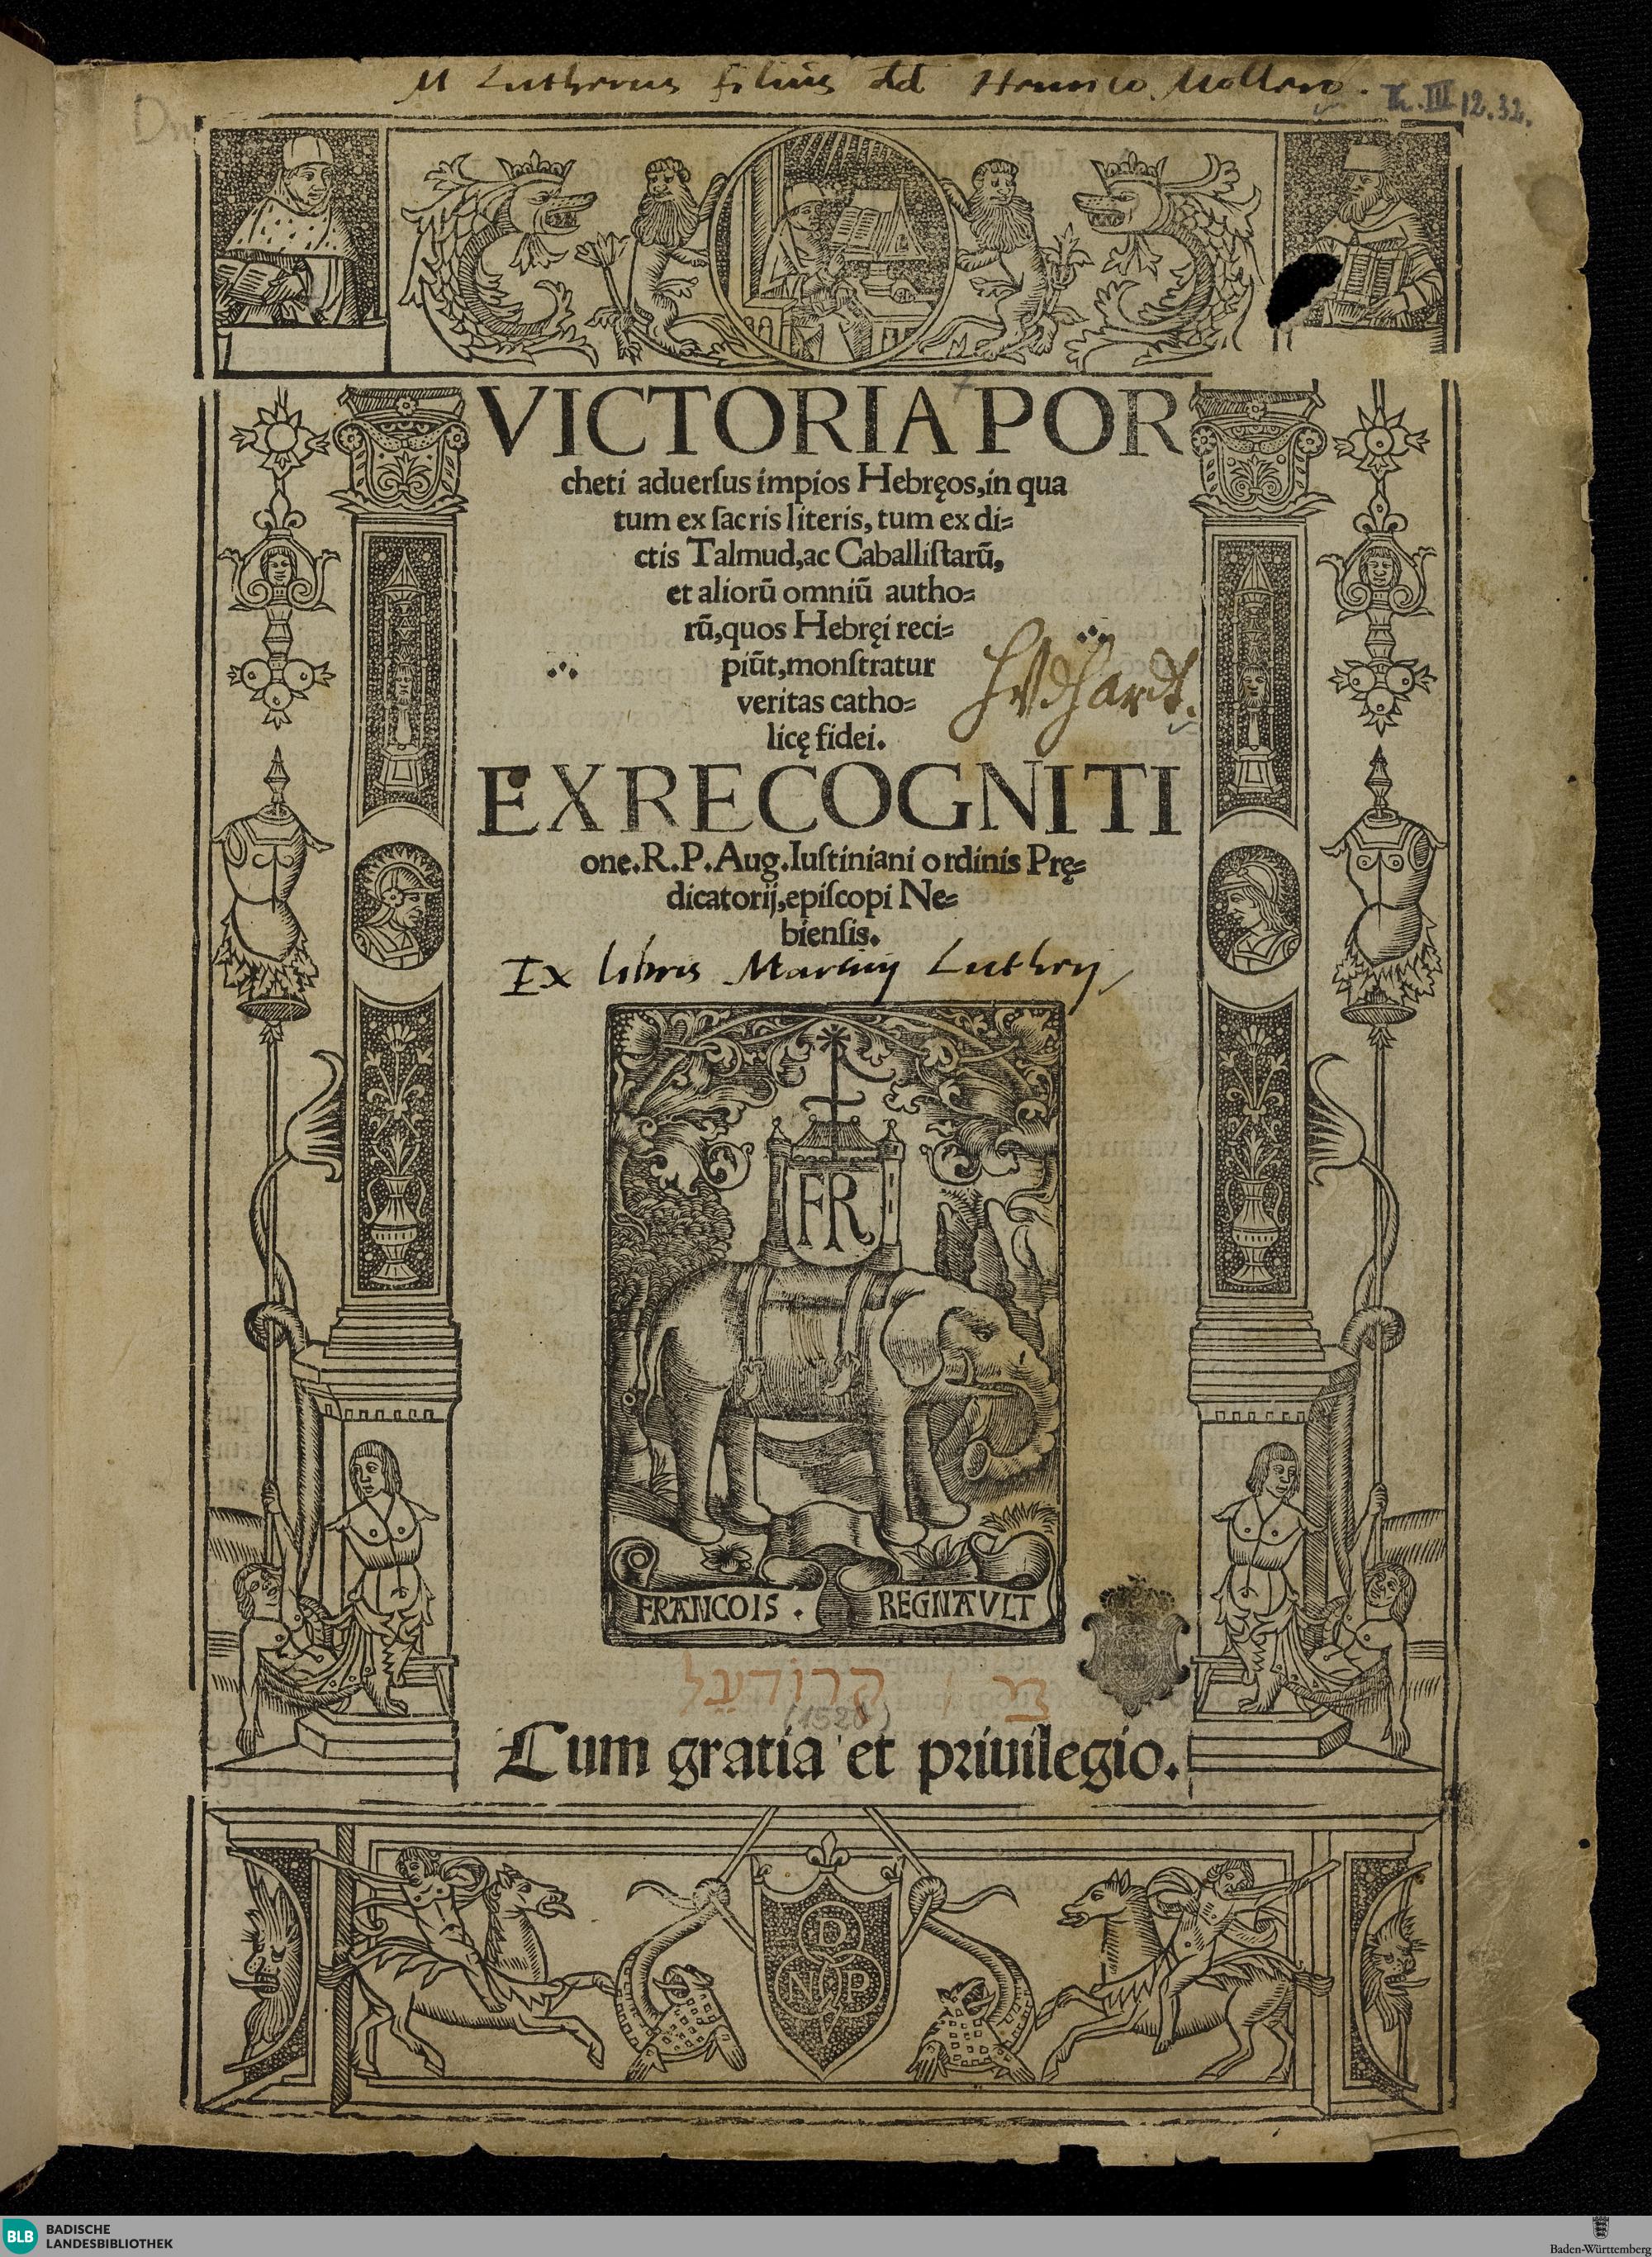 Aus dem Besitz Martin Luthers: Porchetus, Sieg gegen die ungläubigen Juden, Paris 1520, Badische Landesbiblio-thek, 42 B 297 RH